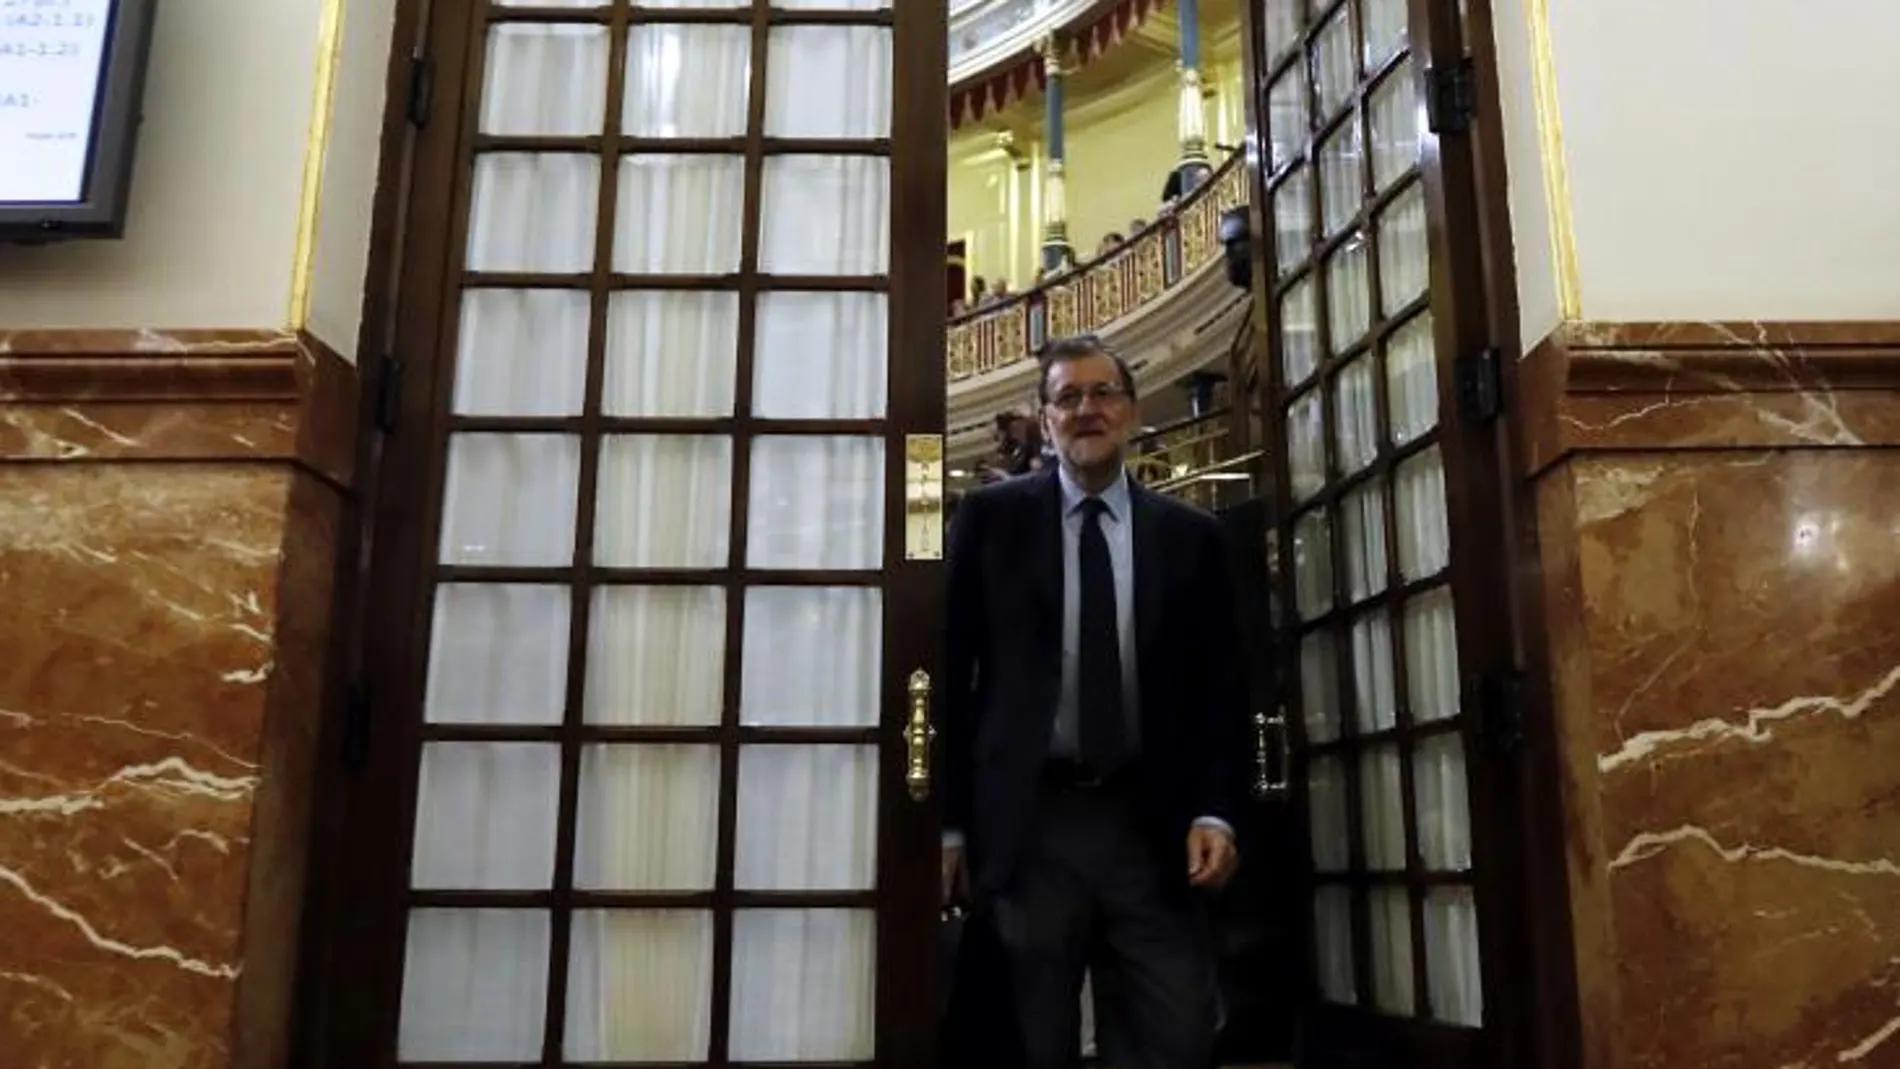 El presidente del Gobierno, Mariano Rajoy, saliendo del hemiciclo del Congreso